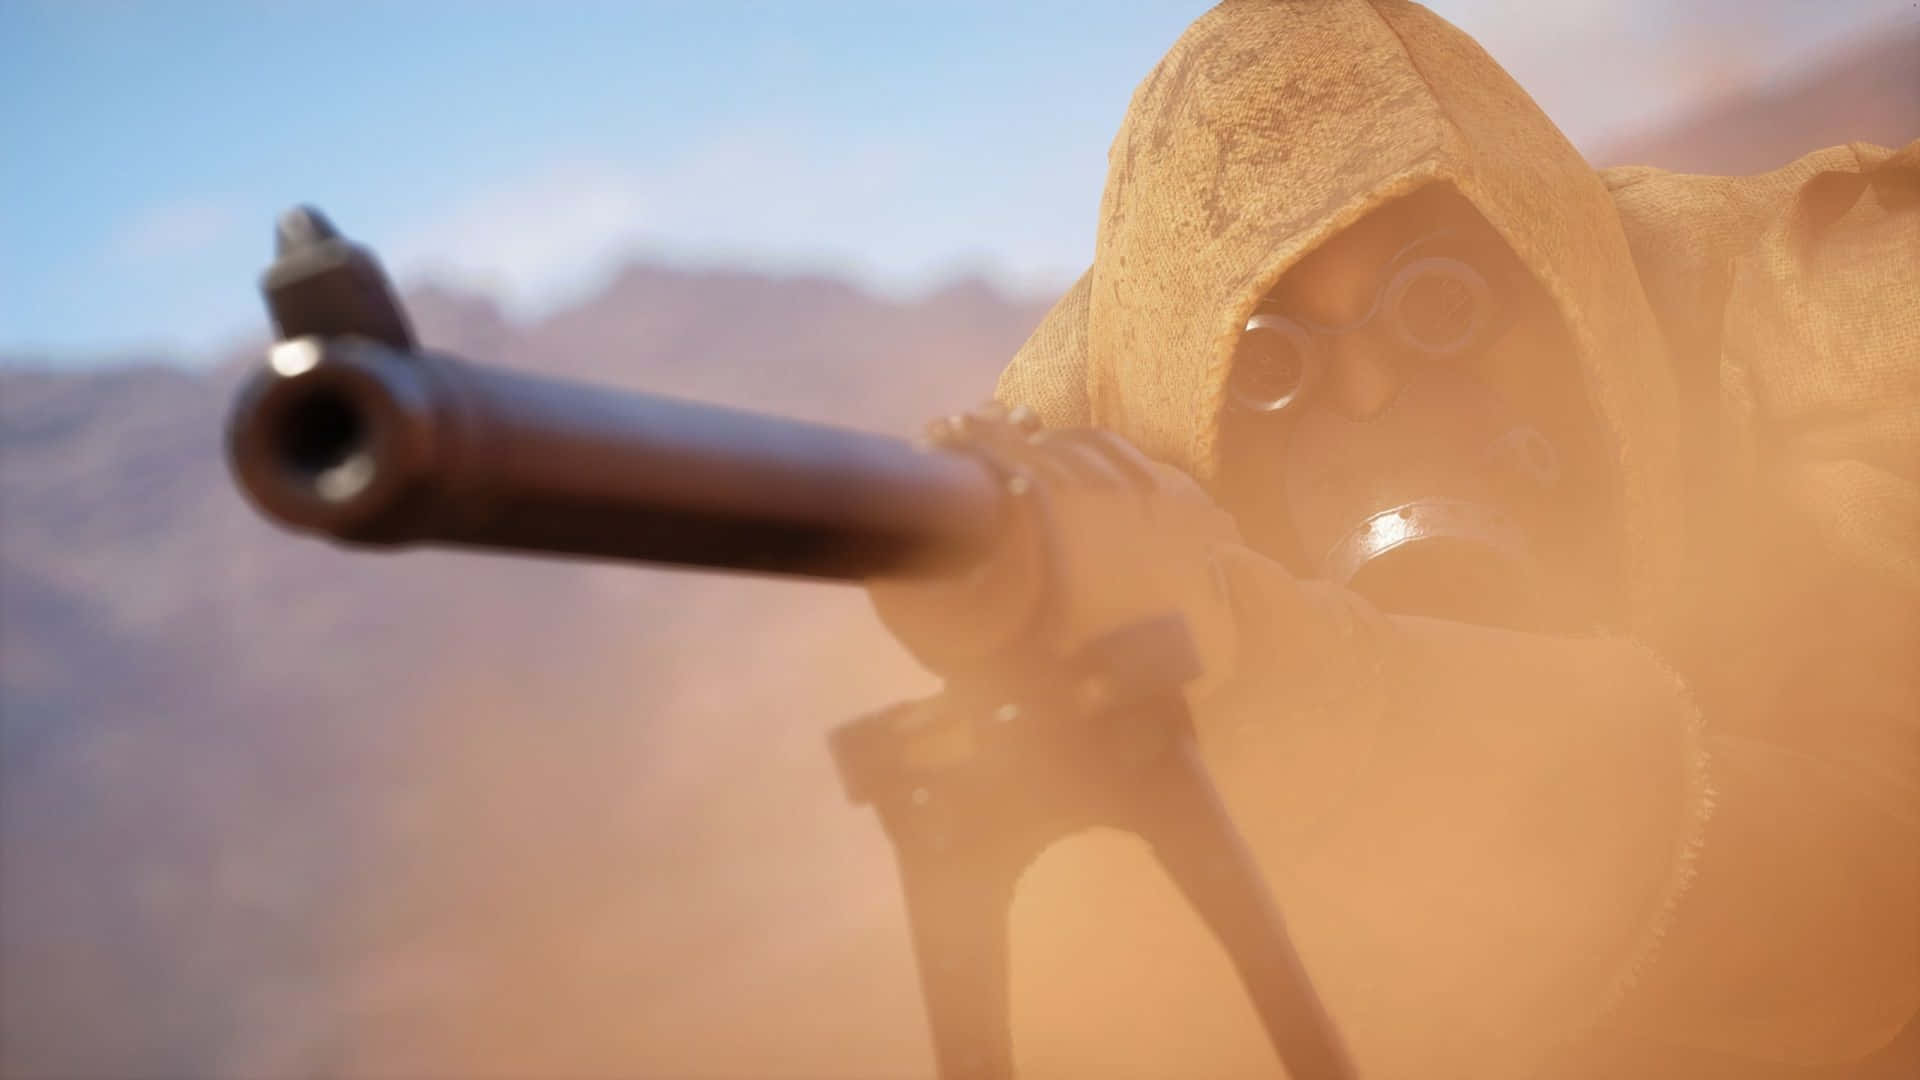 Fondode Pantalla De Francotirador En El Desierto De Battlefield 1 En Resolución 1440p.